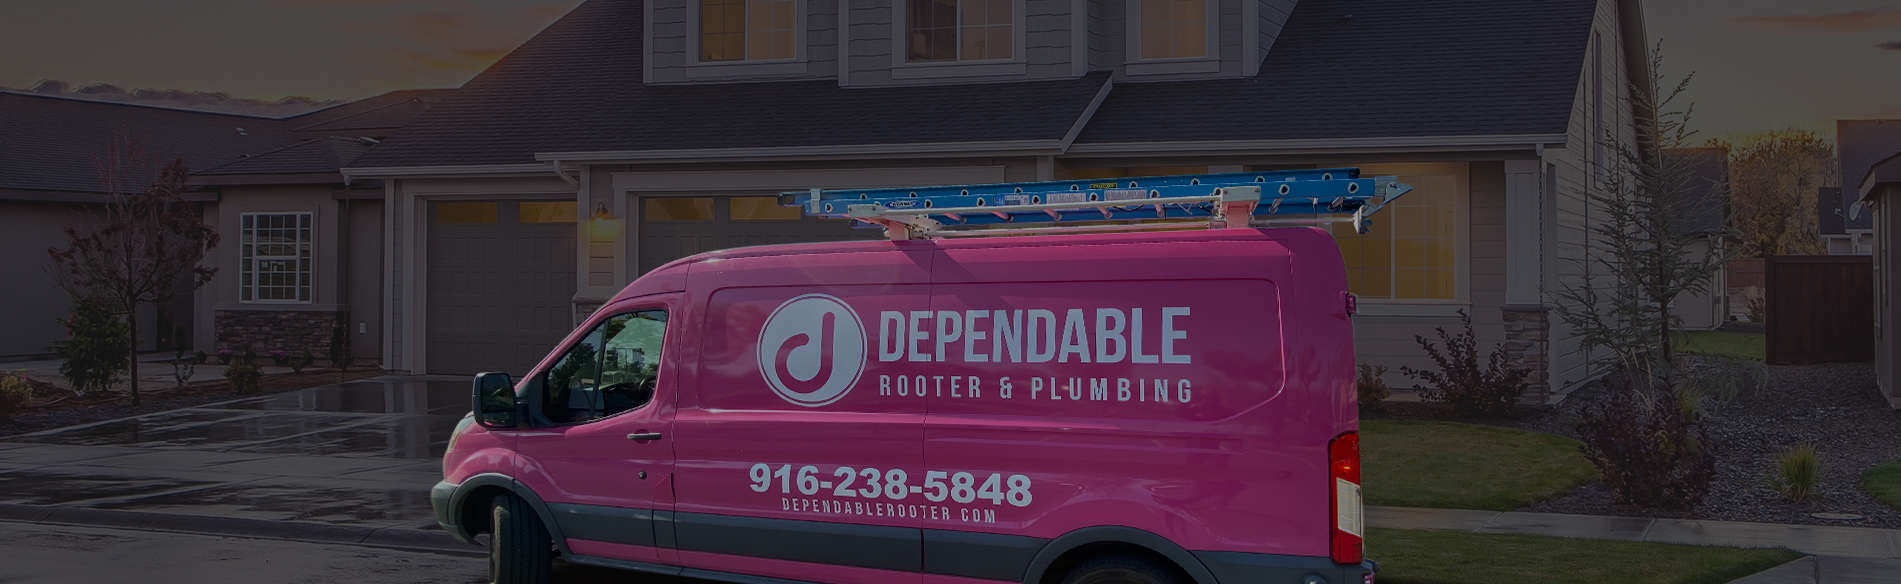 Pink Dependable Rooter & Plumbing Van